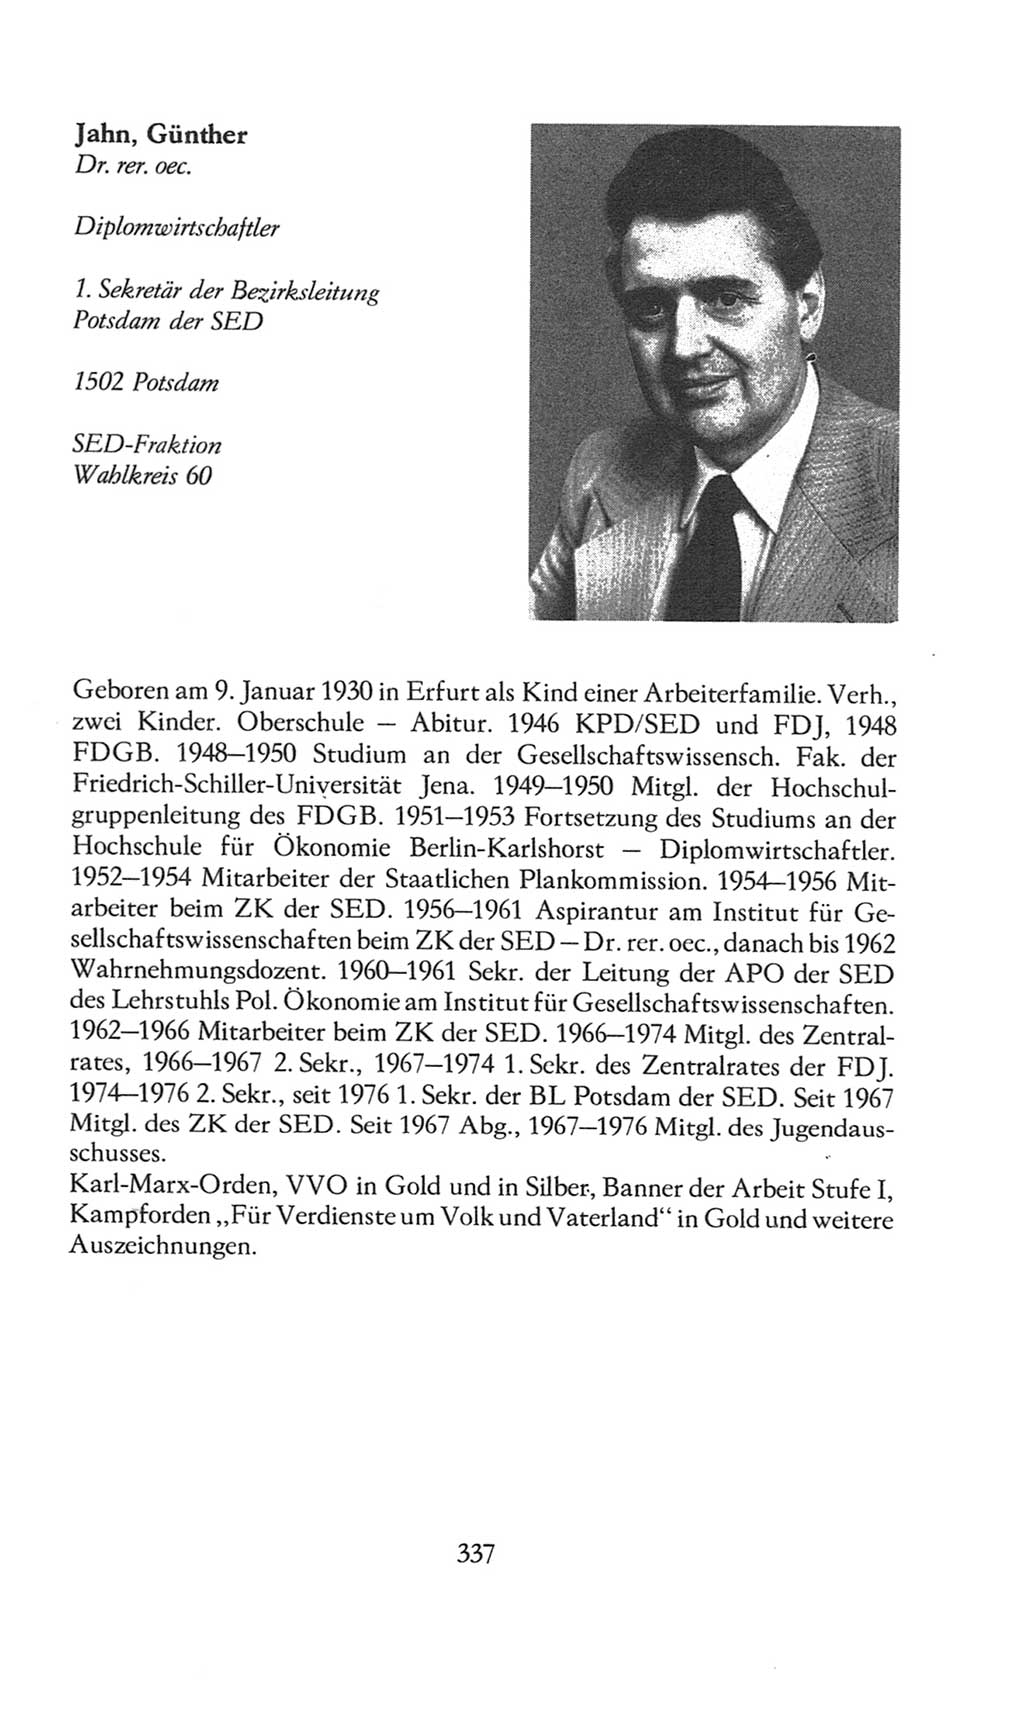 Volkskammer (VK) der Deutschen Demokratischen Republik (DDR), 8. Wahlperiode 1981-1986, Seite 337 (VK. DDR 8. WP. 1981-1986, S. 337)